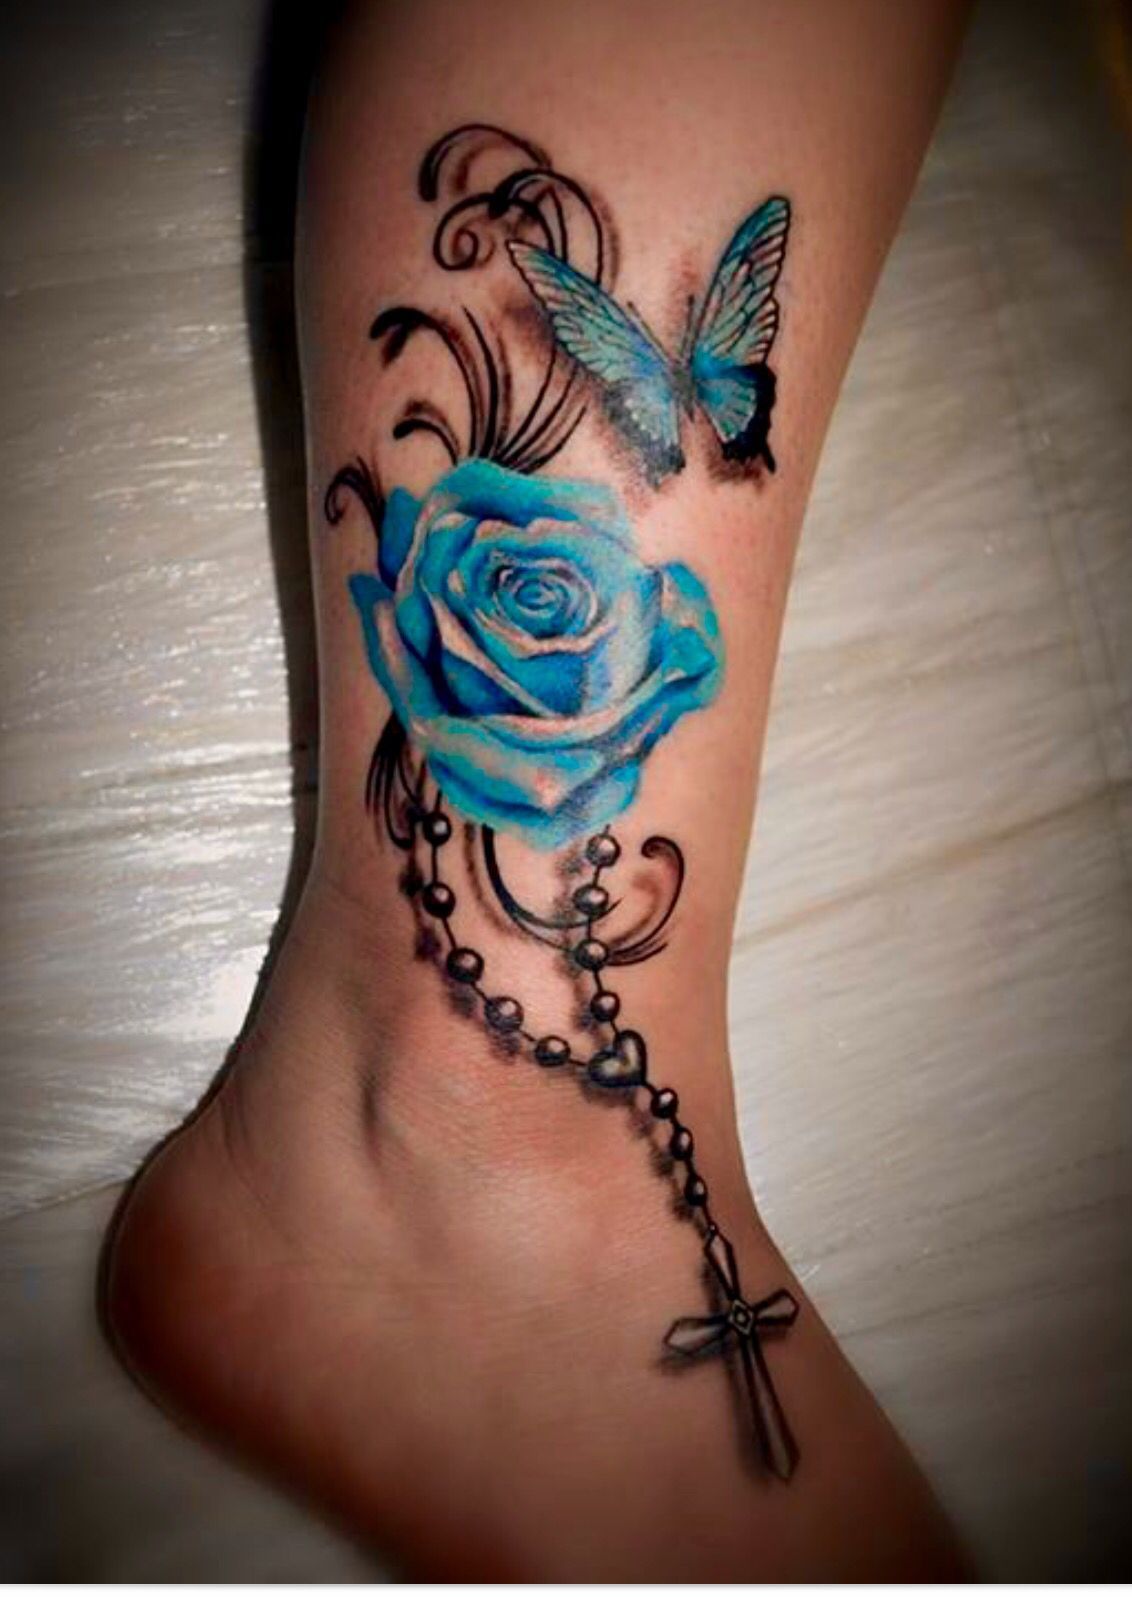 Rosery butterfly tattoo -   18 rose butterfly tattoo ideas